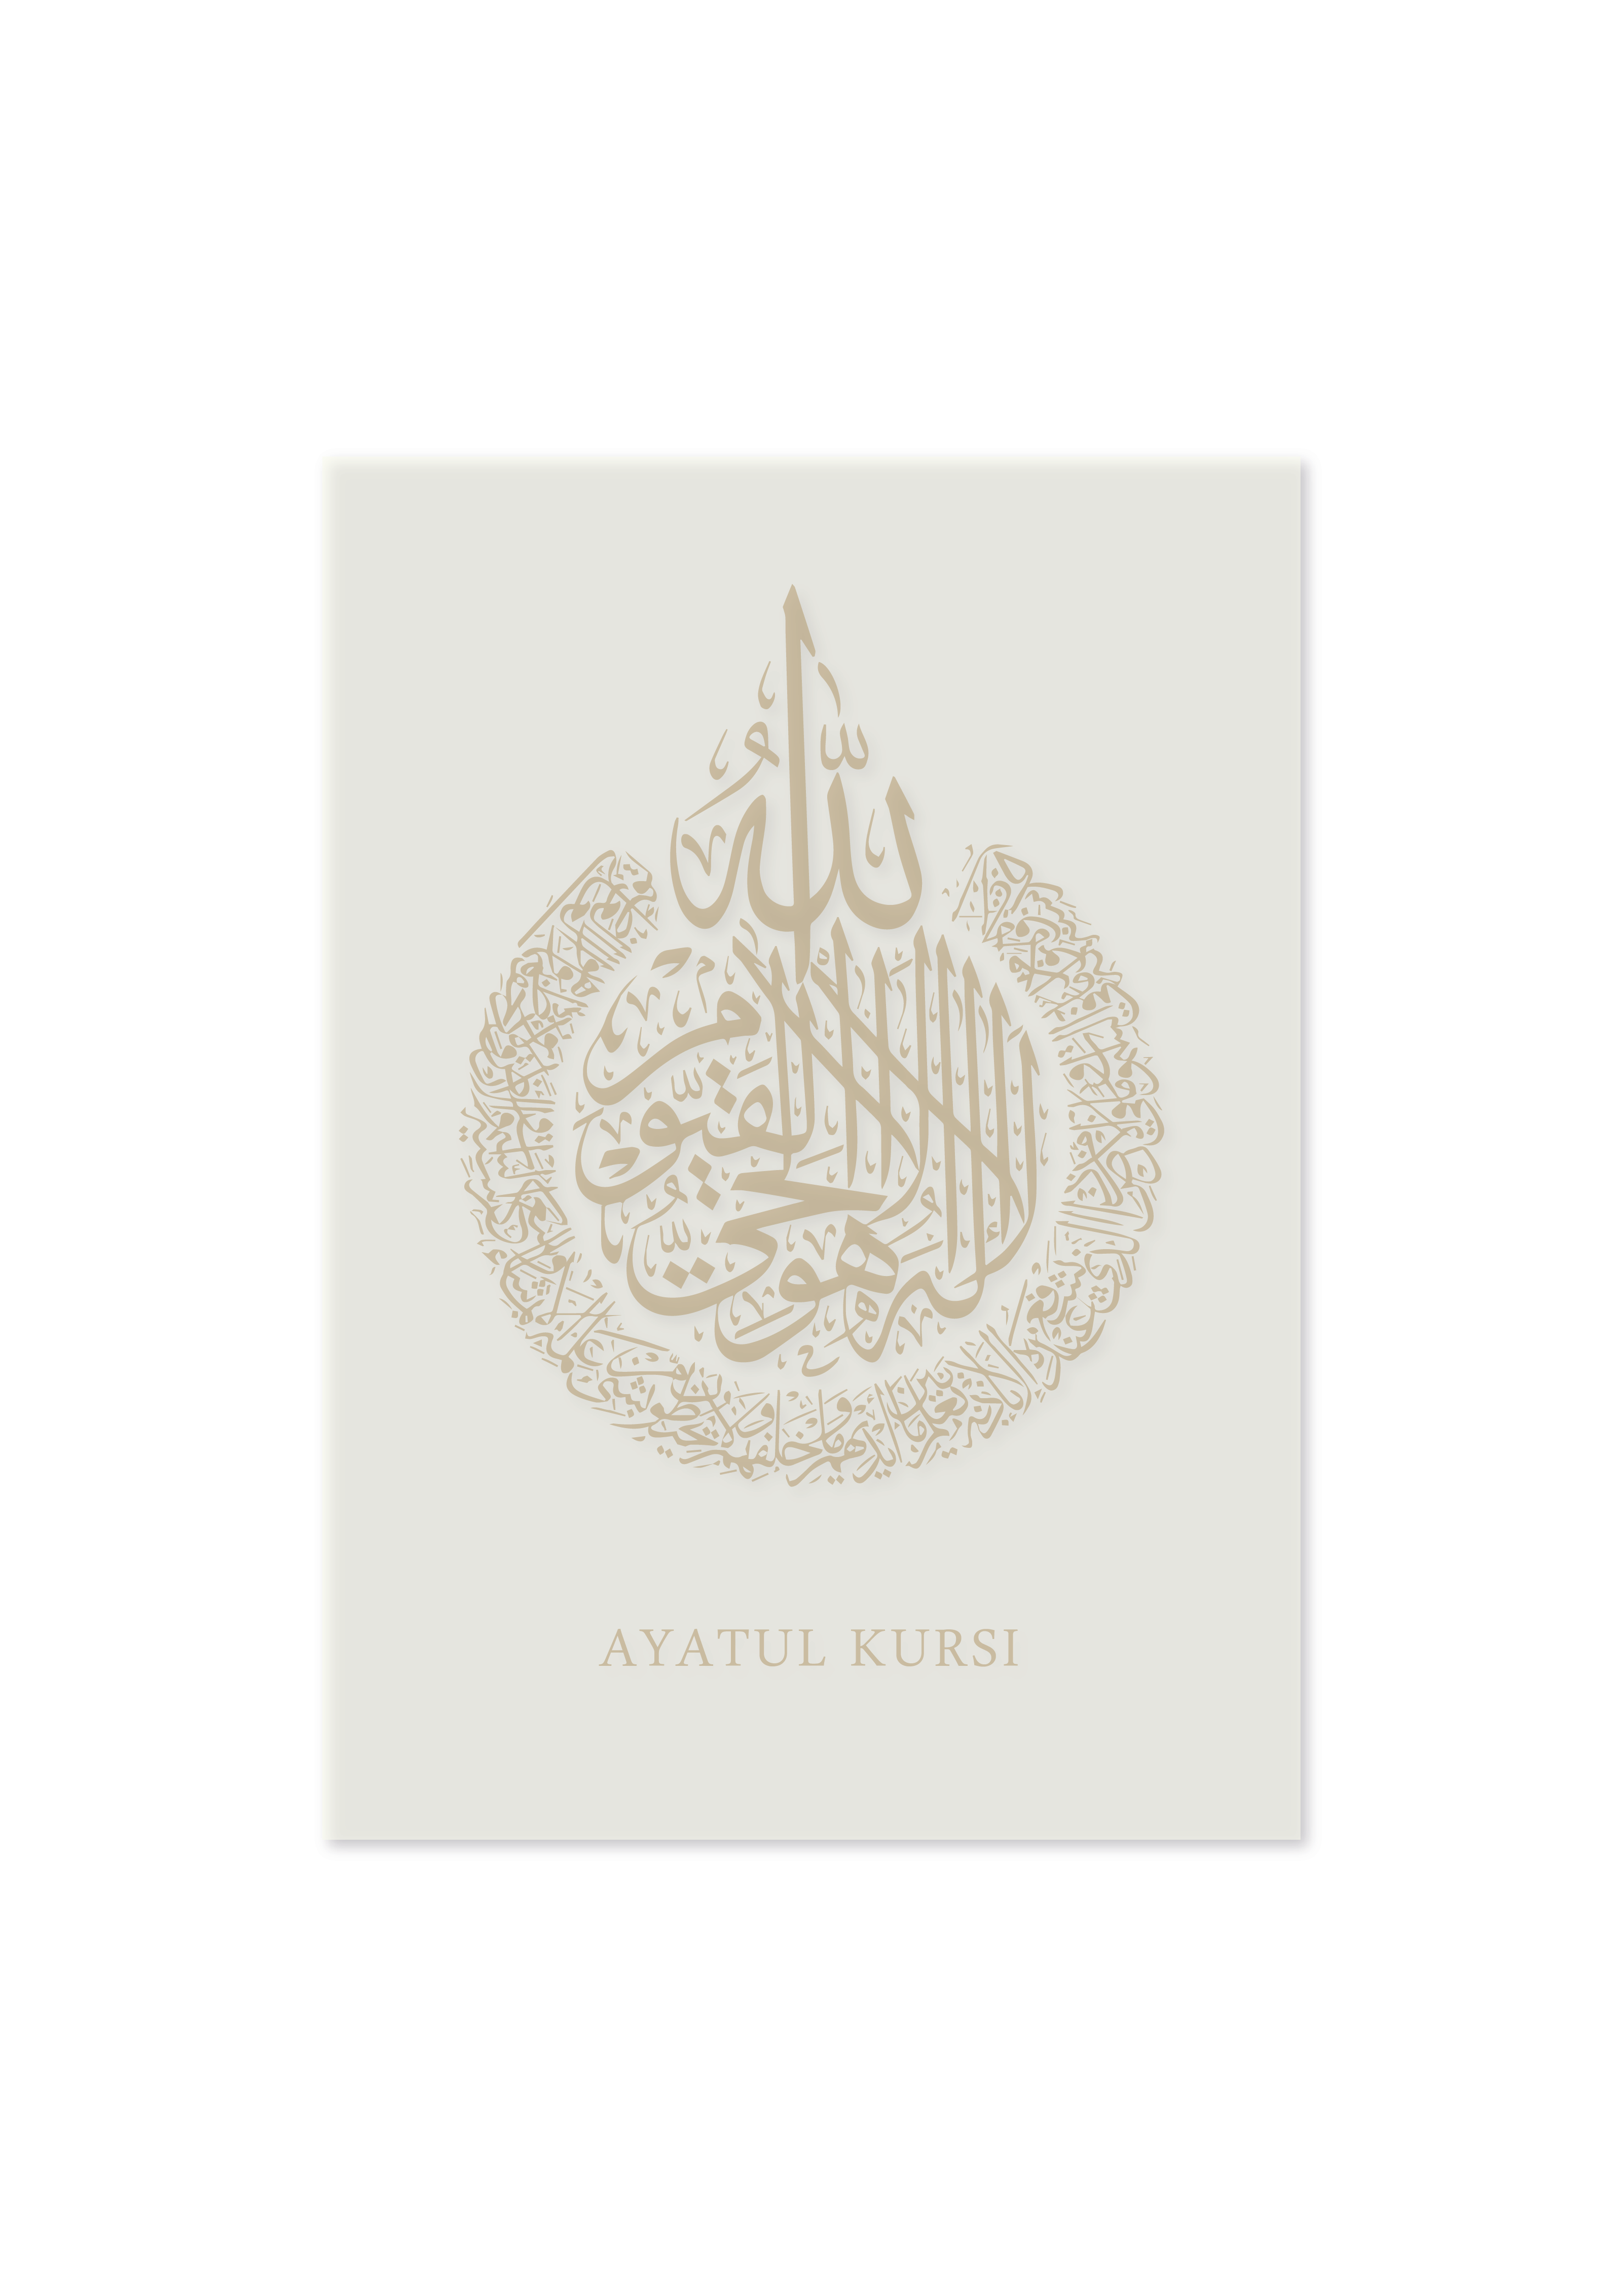 Ayatul Kursi in Arabic Gold Islamic calligraphy | Arabic Calligraphy Islamic Wall Art Print - Peaceful Arts UK